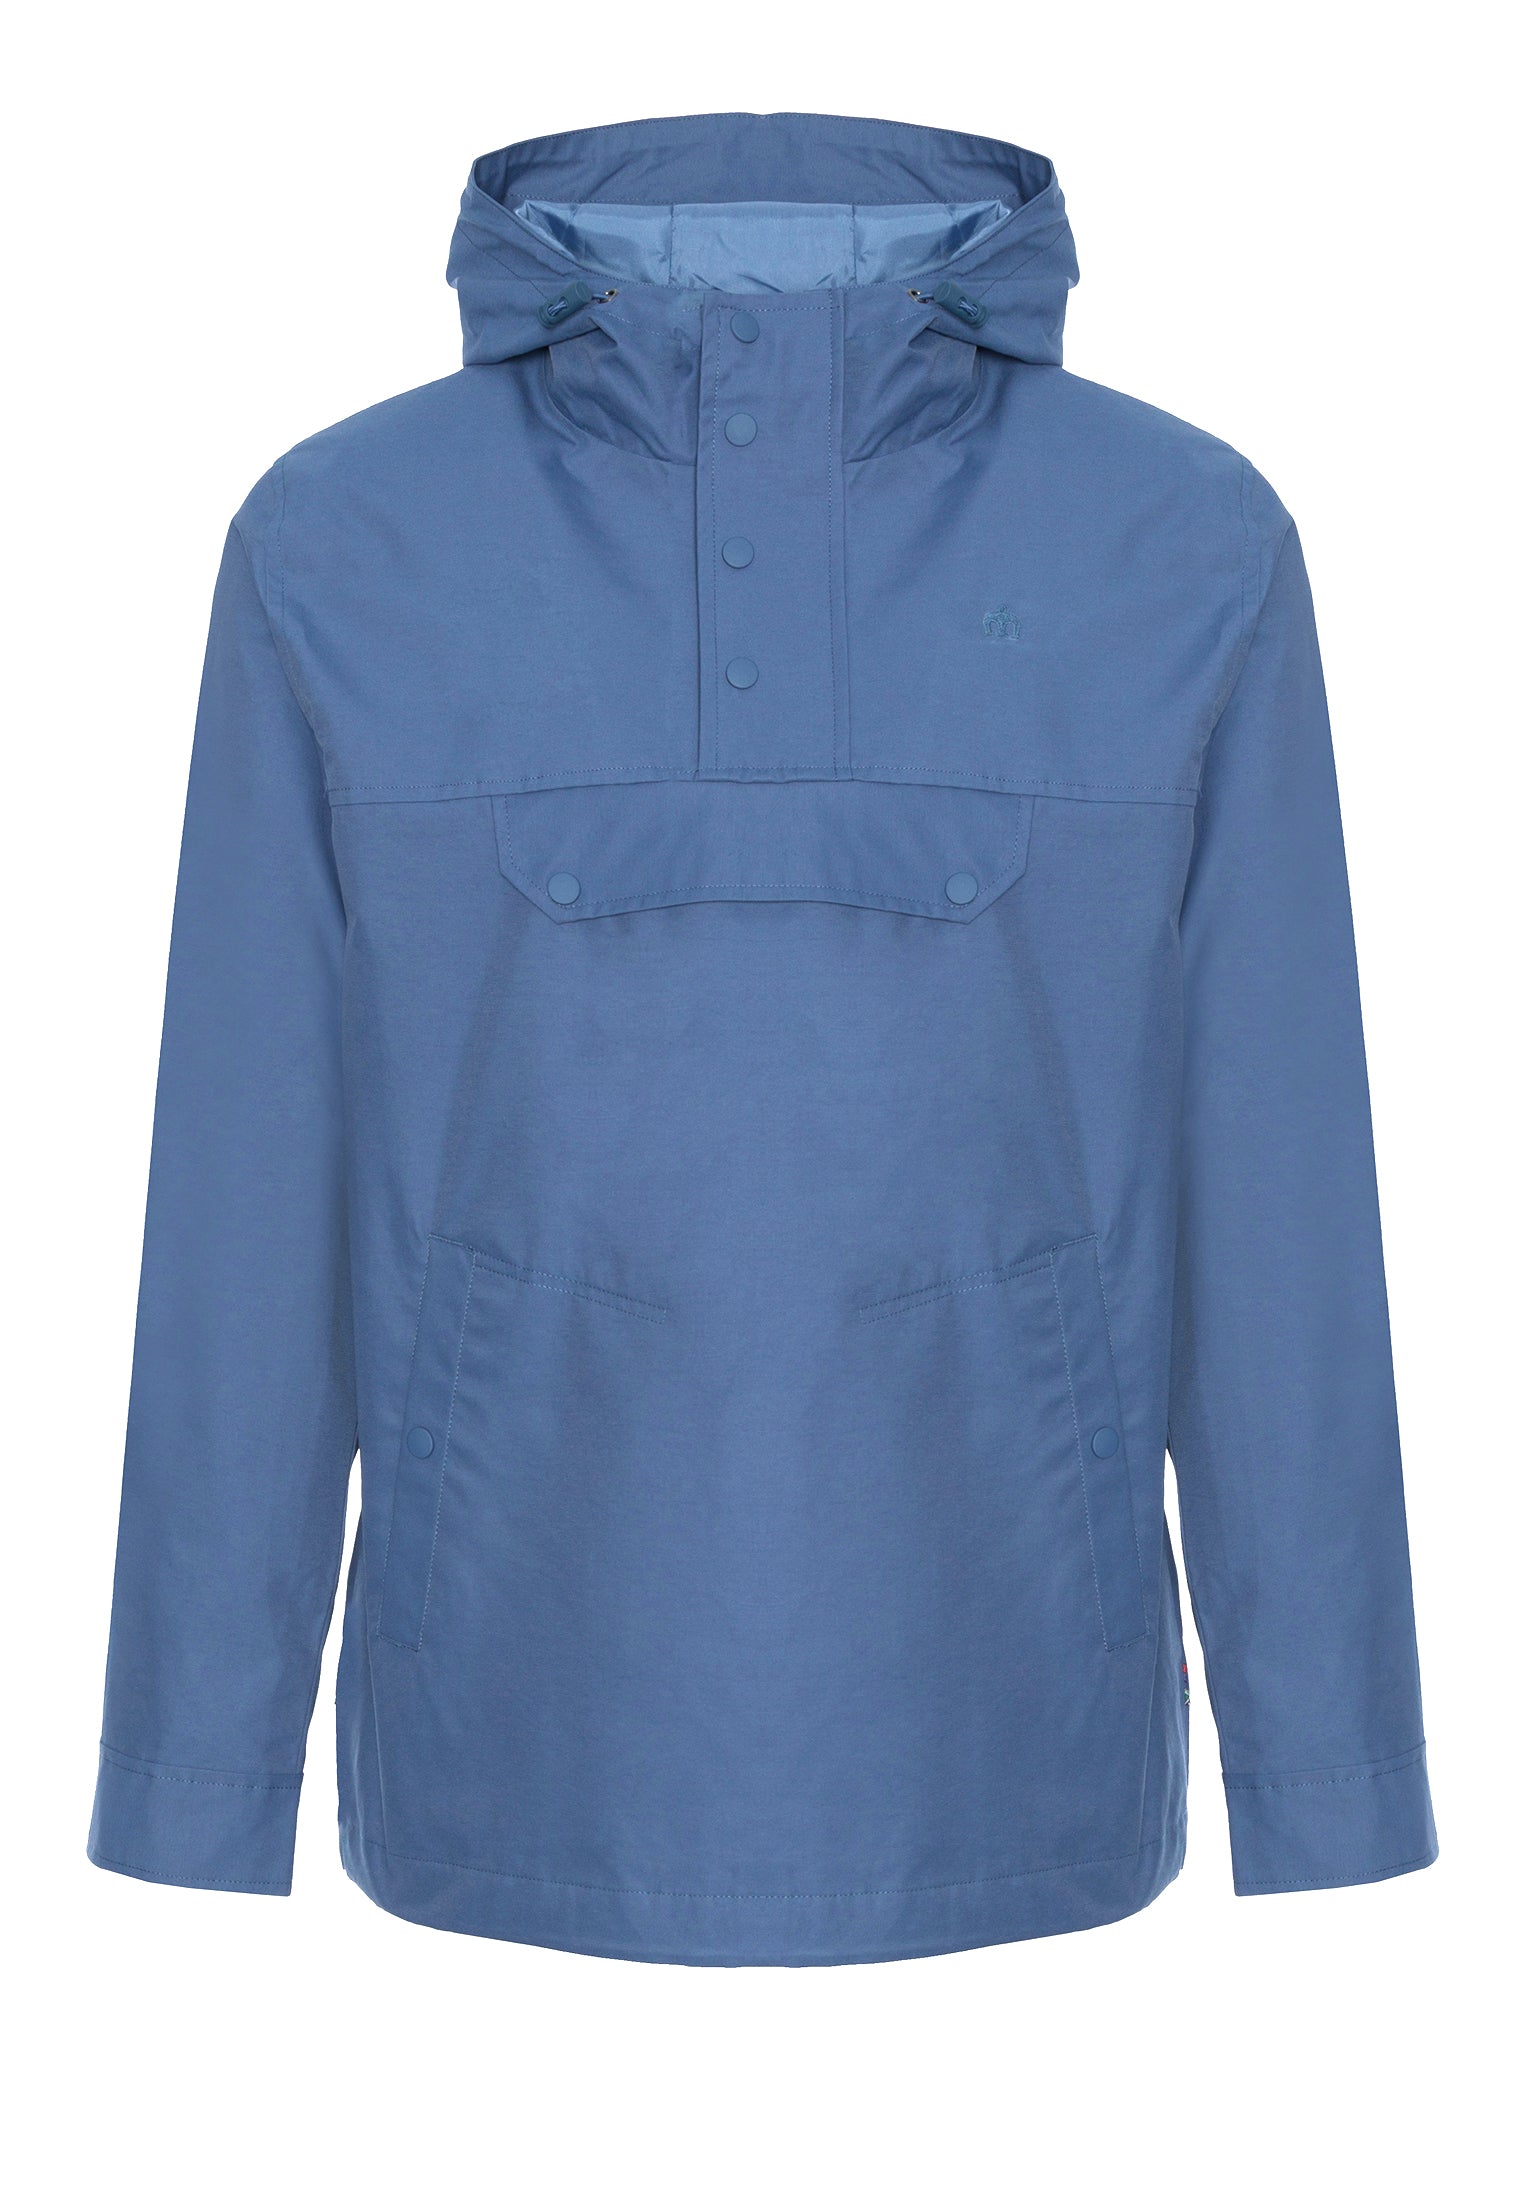 Shield Pullover Windbreaker Jacket Blue - Merc London